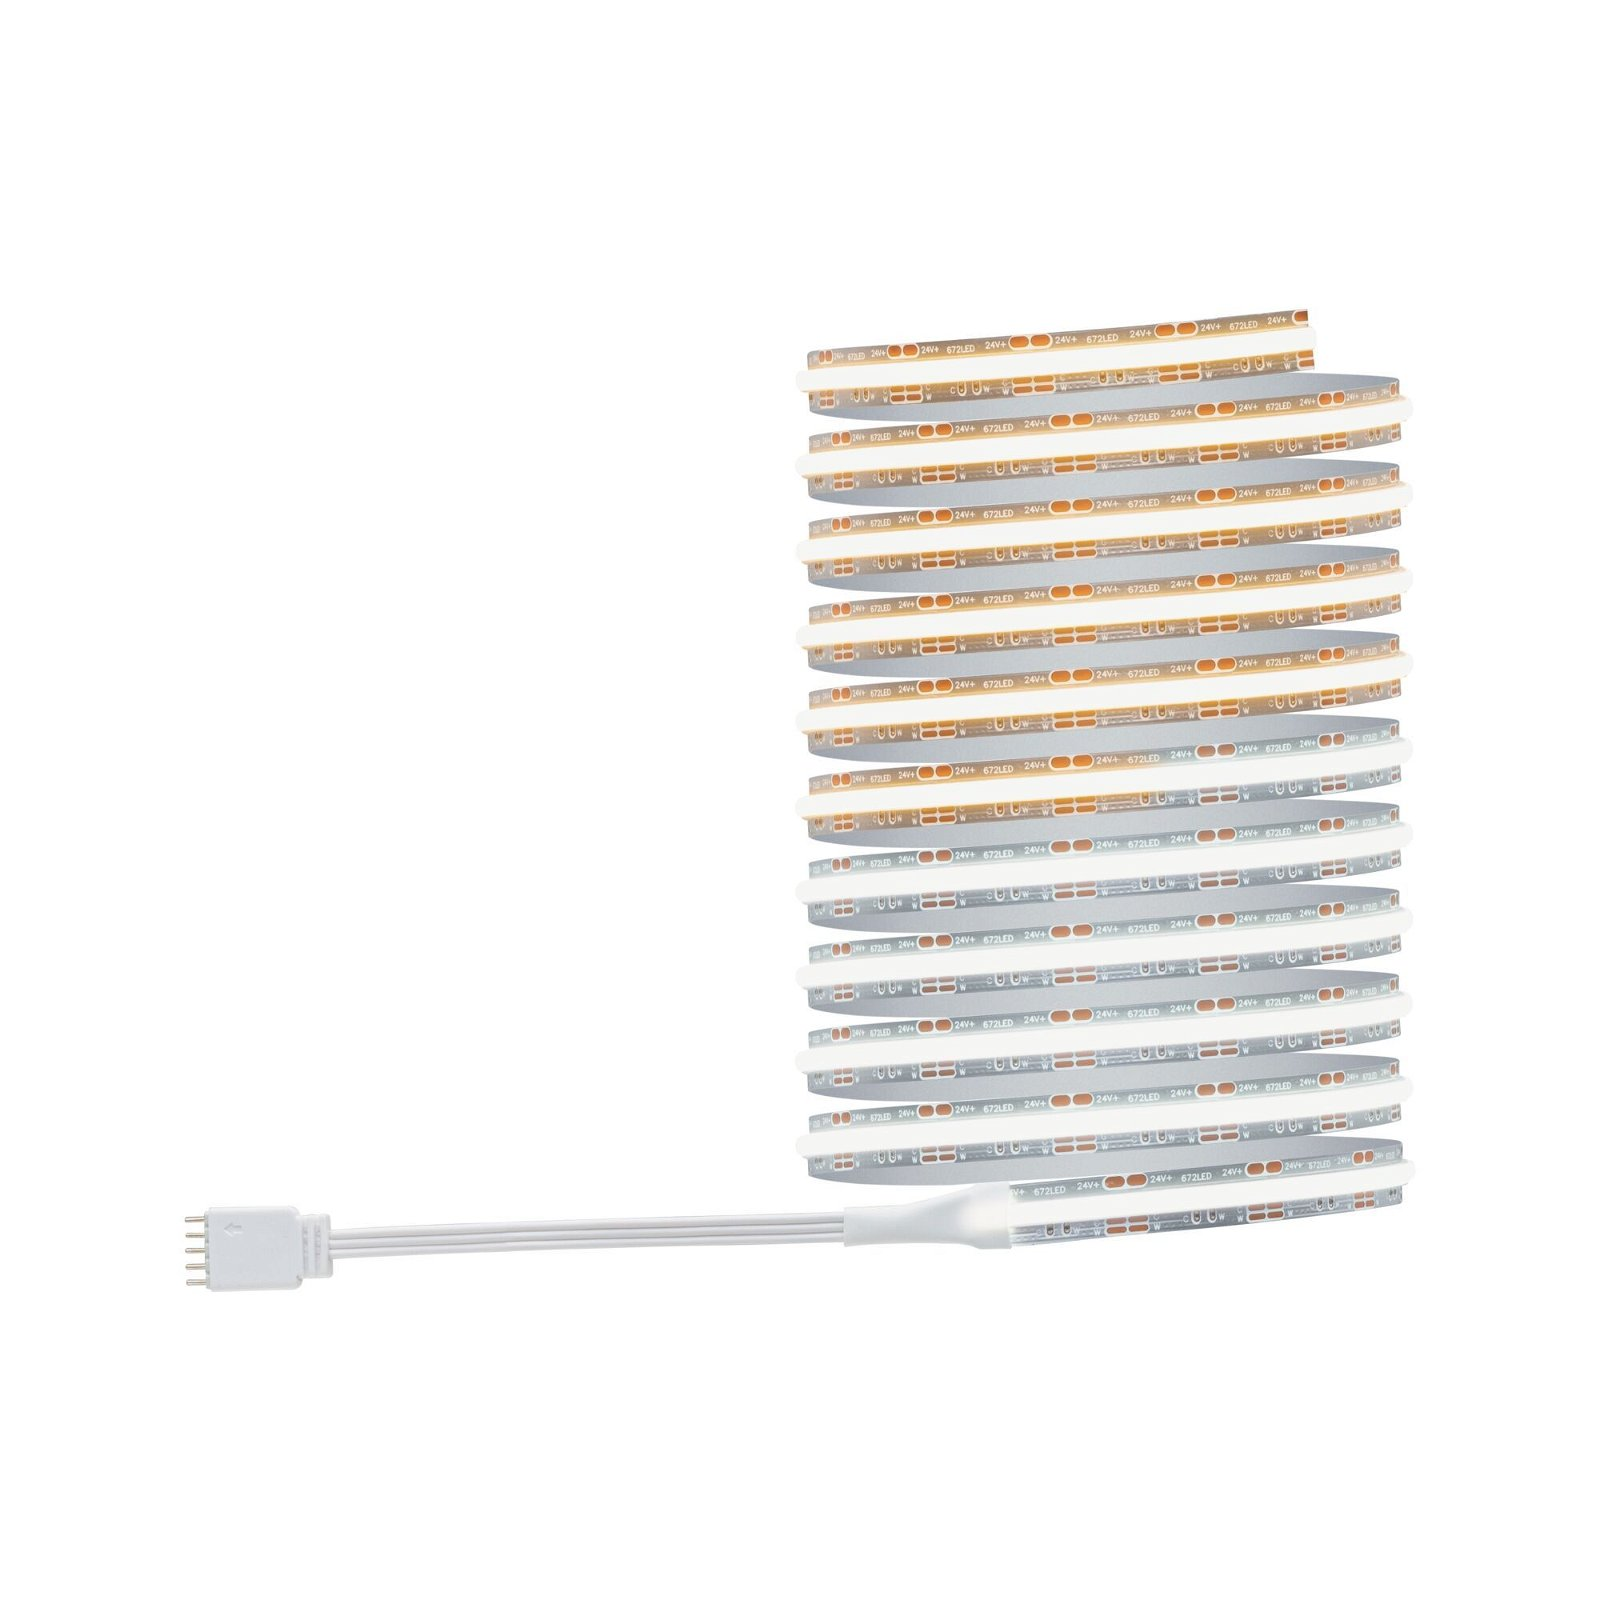 PAULMANN LICHT MaxLED 1000 LED Strips (71115) White Tunable